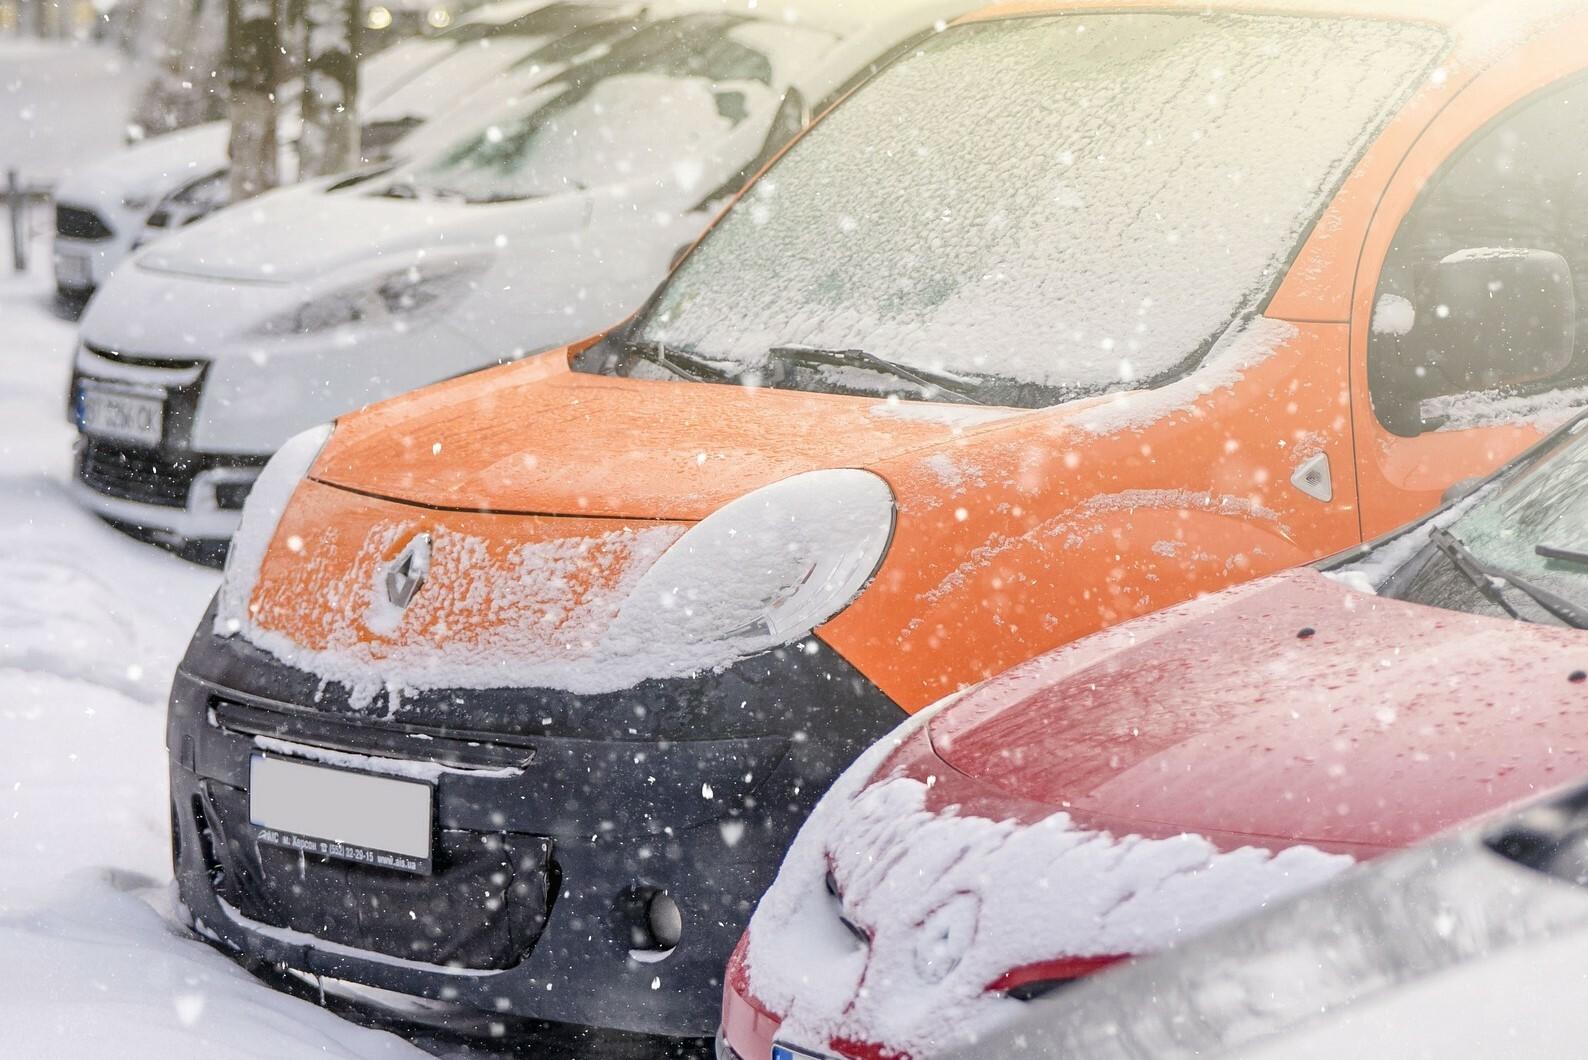 Odvrátená stránka dieselových automobilov v zime. Čo robiť, ak vám „zamrzla“ nafta?